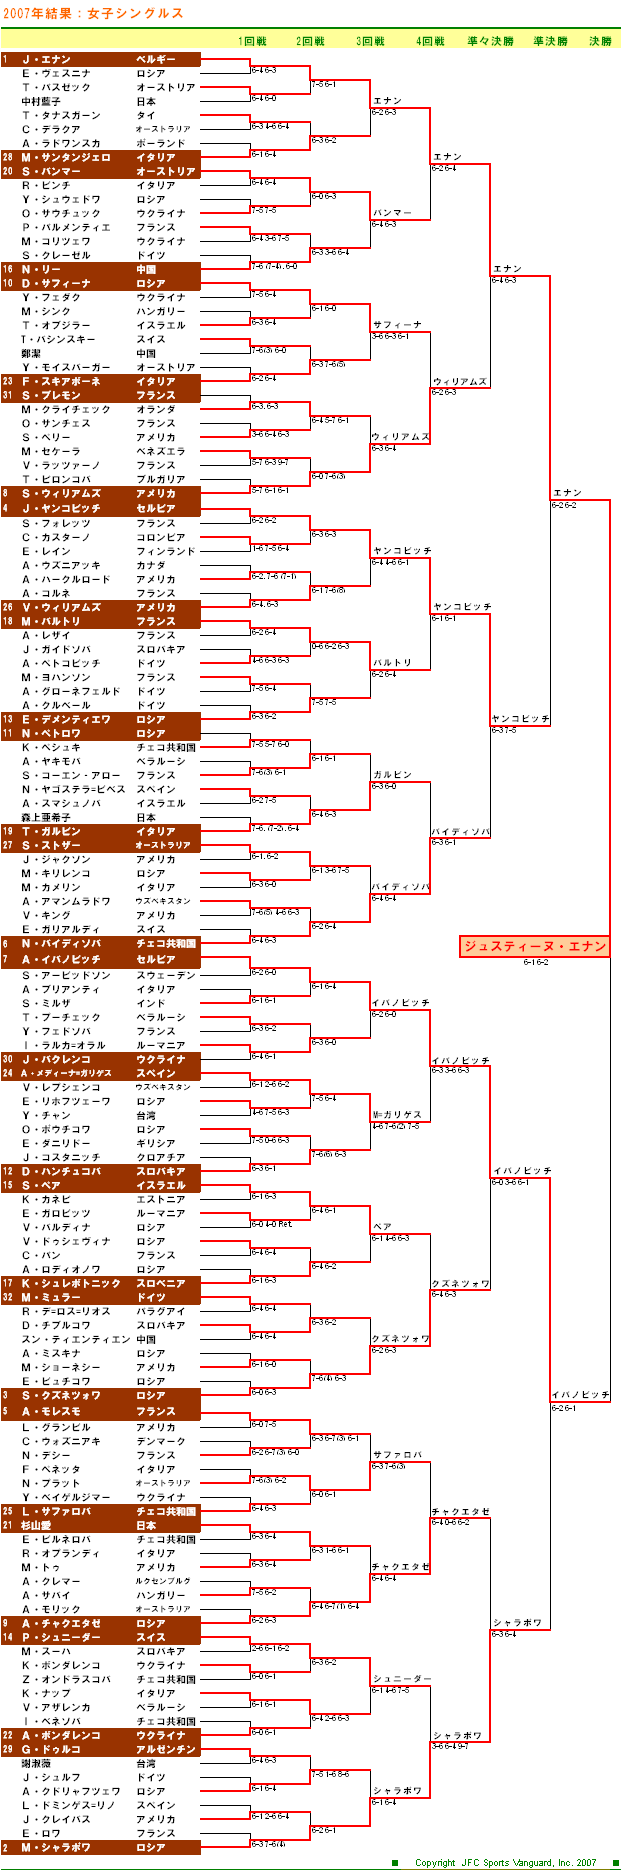 全仏オープンテニス2007　女子シングルスドロー表